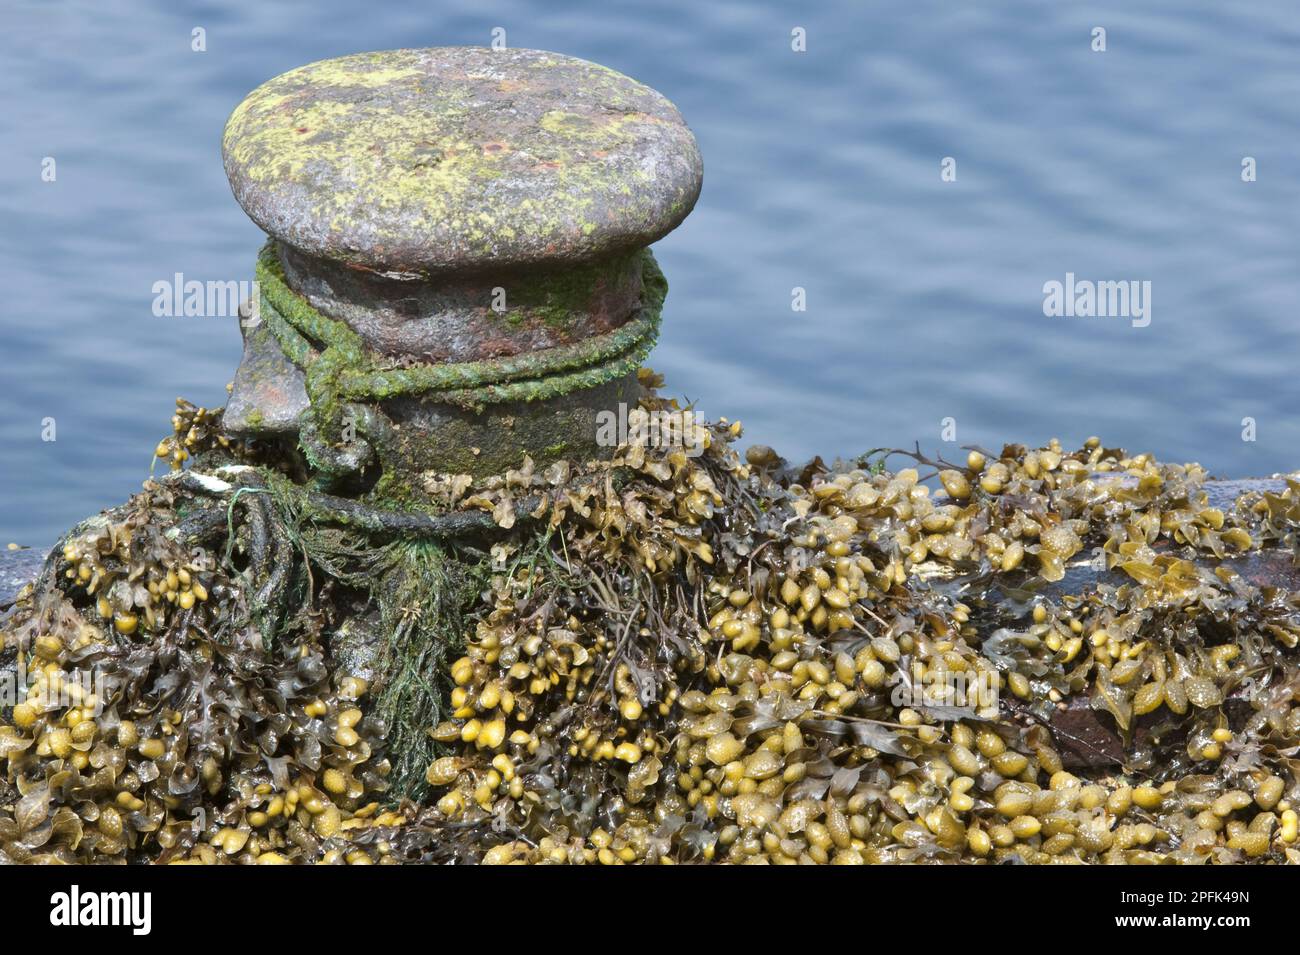 Flachwinde (Fucus spiralis) – Schnecke, die an exponierten Küsten mit Anlegestellen bei Ebbe wächst, Shetland Islands, Schottland, Vereinigtes Königreich Stockfoto